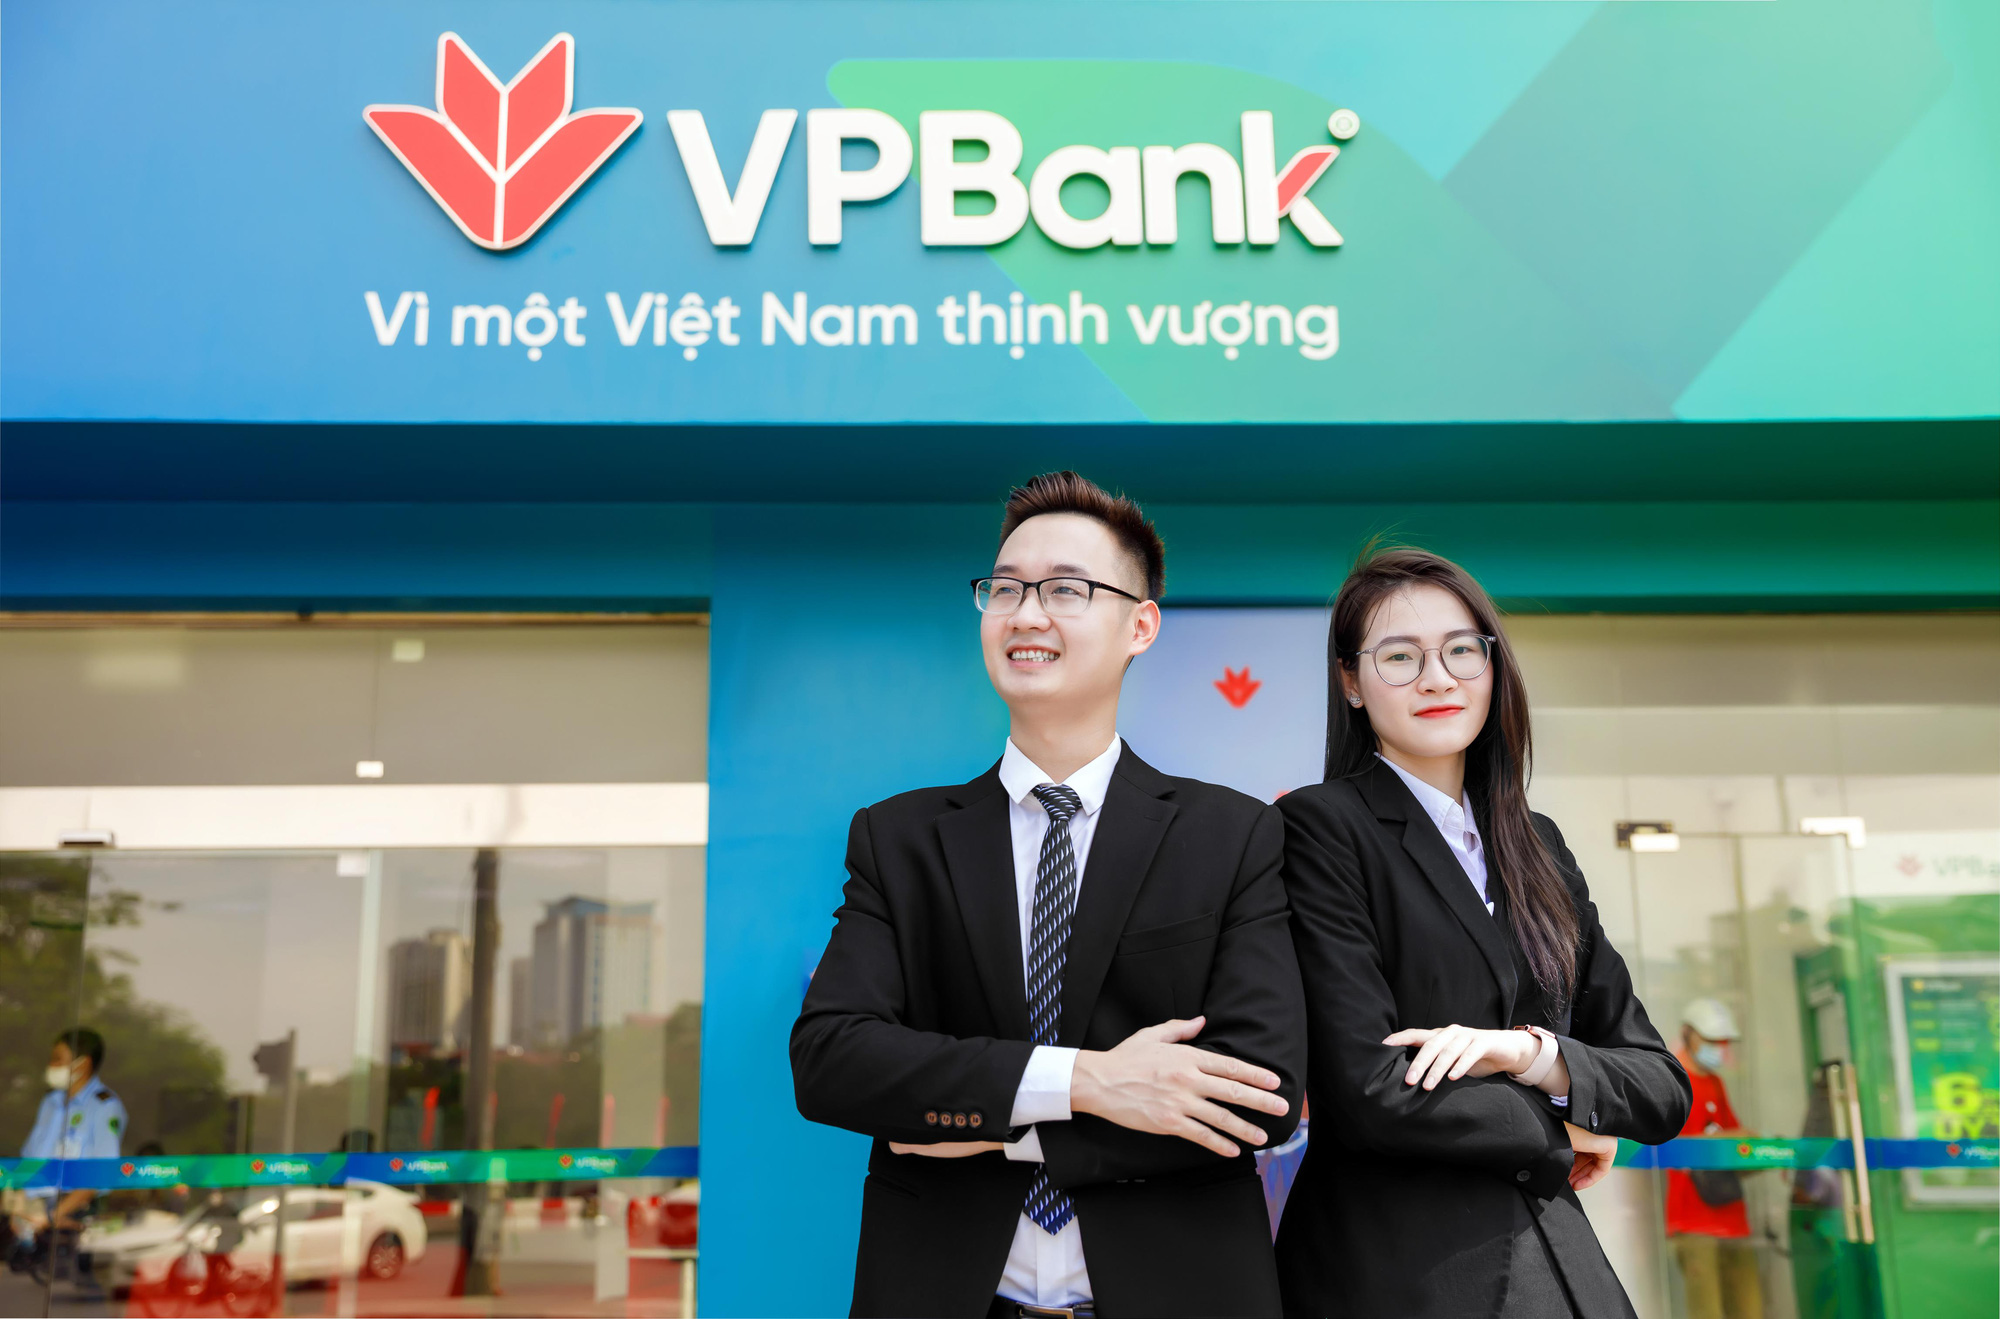 Moody’s nâng xếp hạng tín nhiệm của VPBank lên ngang mức xếp hạng Quốc gia - Ảnh 1.